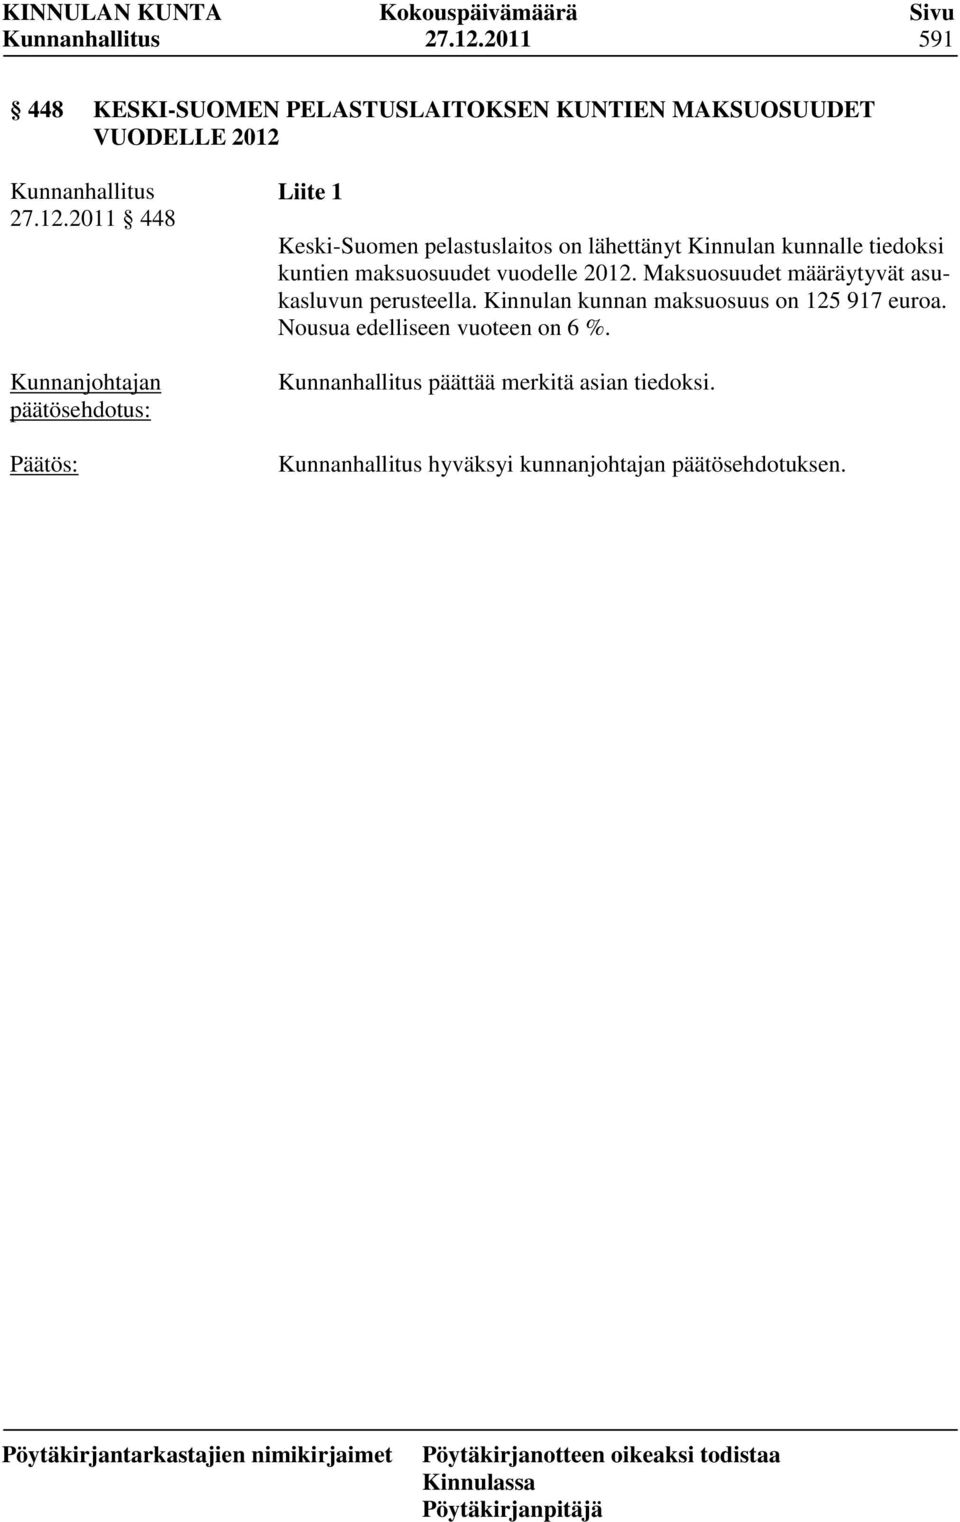 Keski-Suomen pelastuslaitos on lähettänyt Kinnulan kunnalle tiedoksi kuntien maksuosuudet vuodelle 2012.